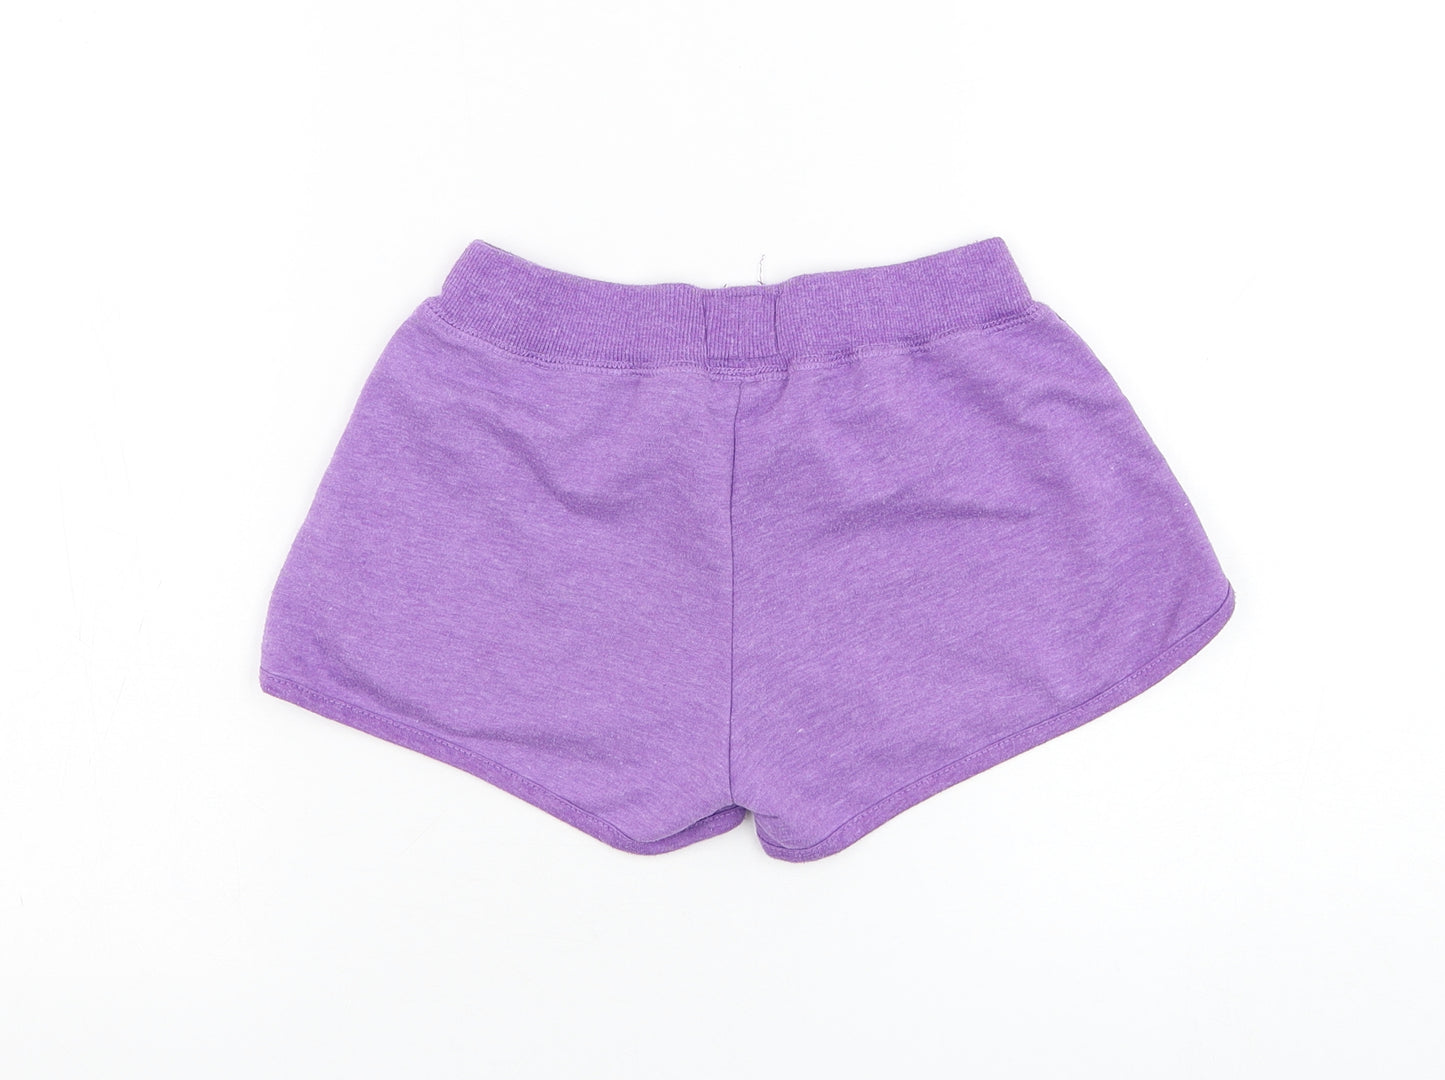 Primark Girls Purple Polyester Sweat Shorts Size 11-12 Years Regular Drawstring